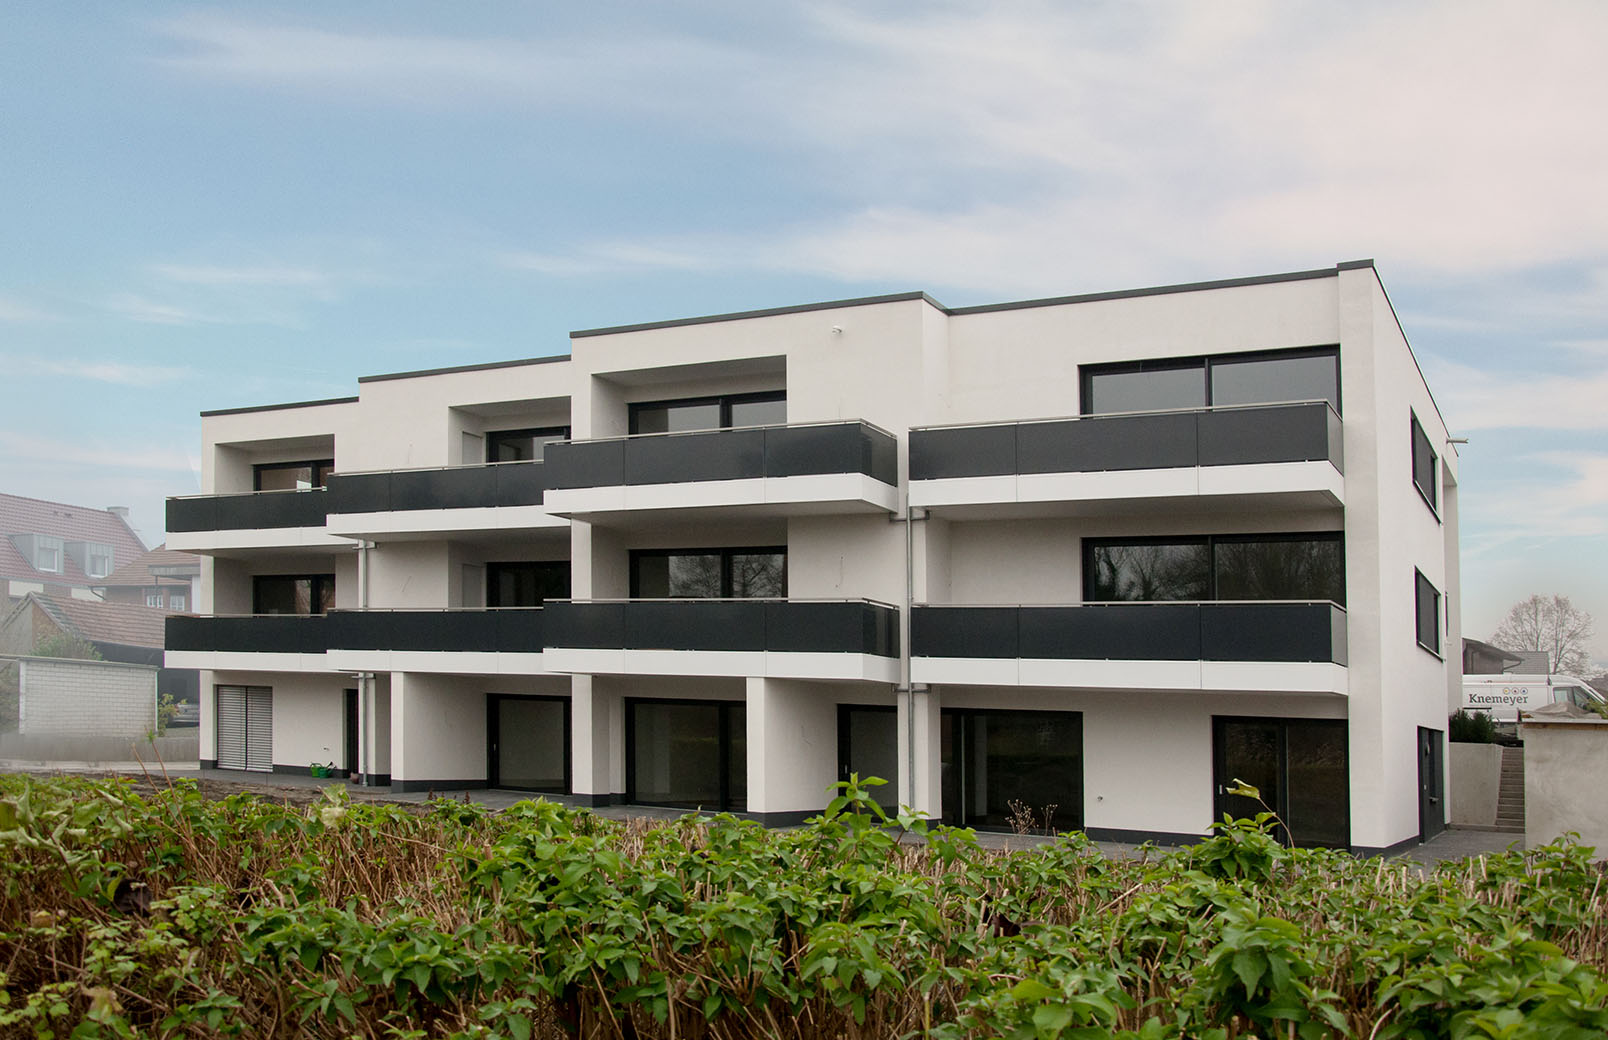 Neubau einer modernen Wohnbebauung in Niedersachsen | Architektur Wohnen